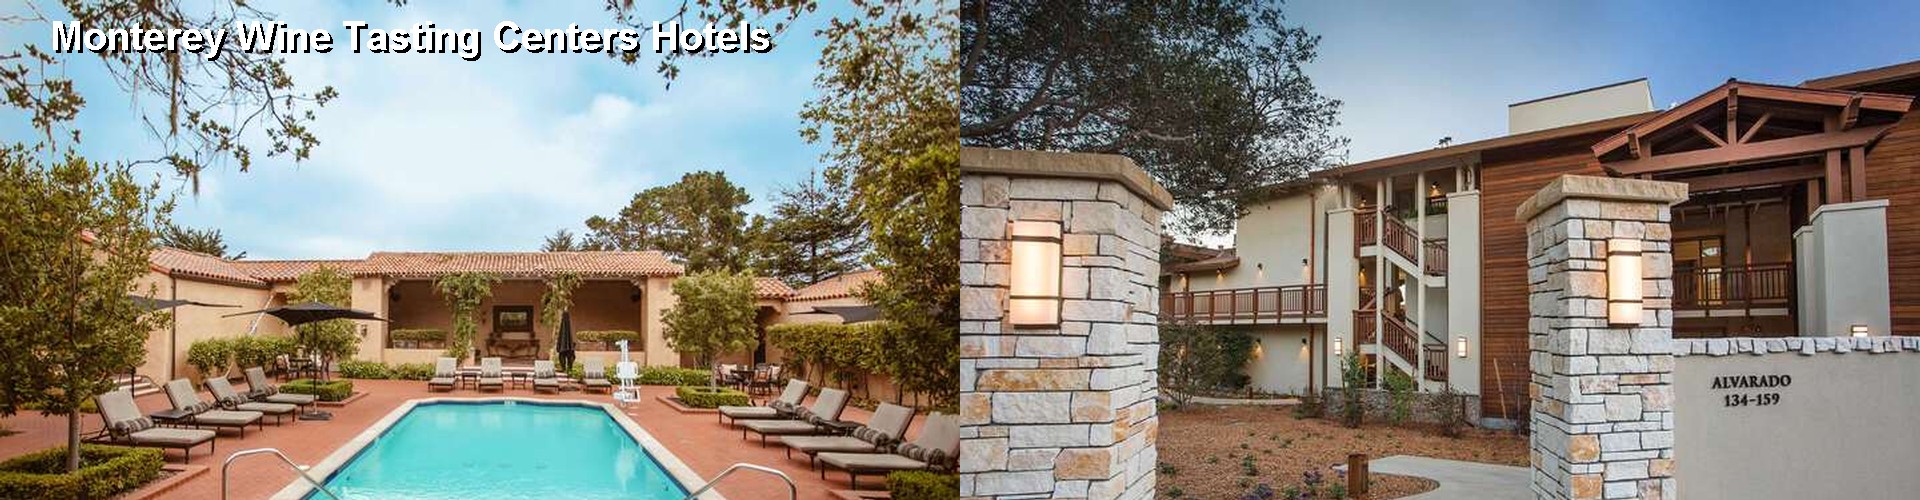 5 Best Hotels near Monterey Wine Tasting Centers